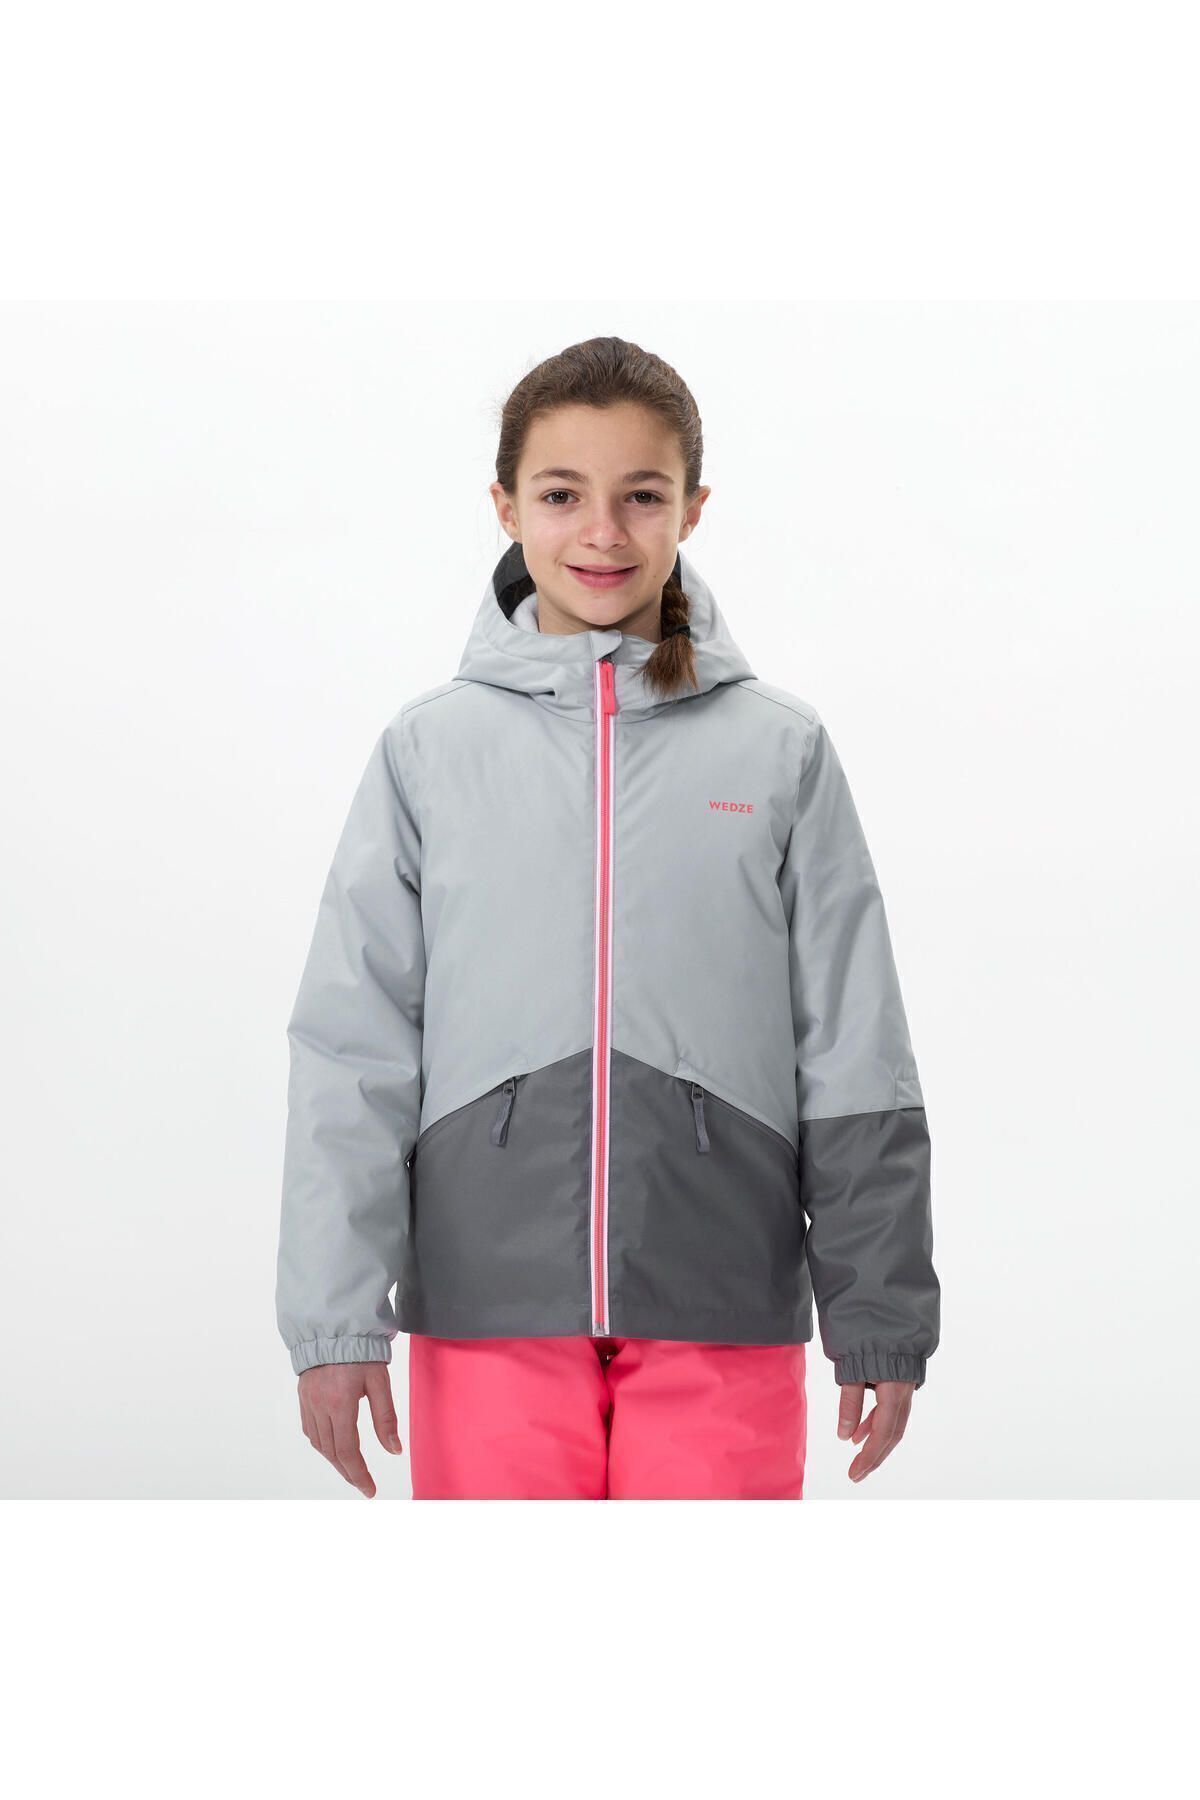 Детская лыжная куртка Decathlon — Серая — 100 302122